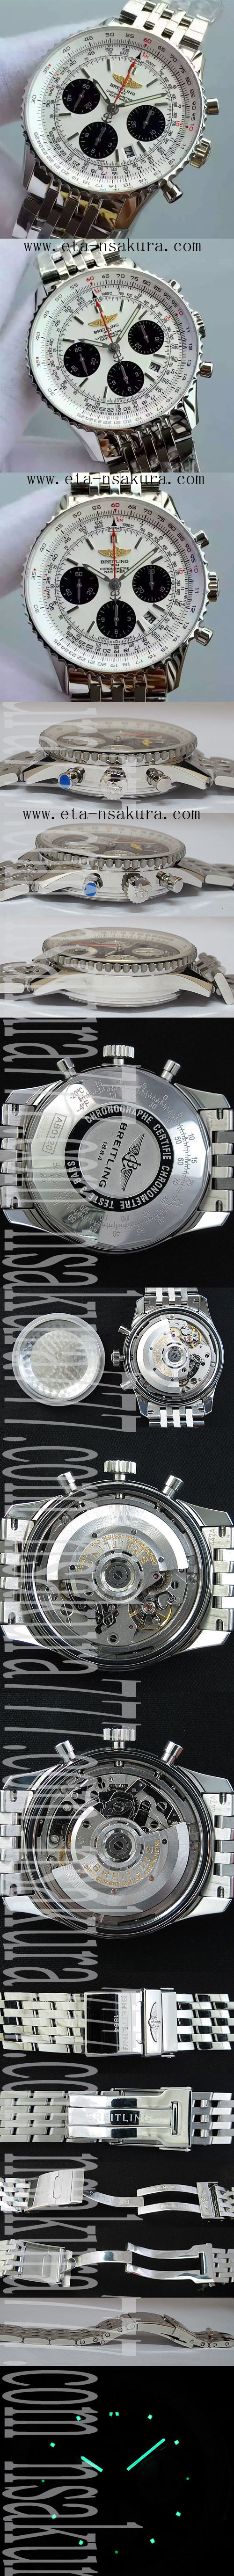 スーパーコピー時計 Breitling navitimer ブライトリング ナビタイマー 01(JF工場) - ウインドウを閉じる